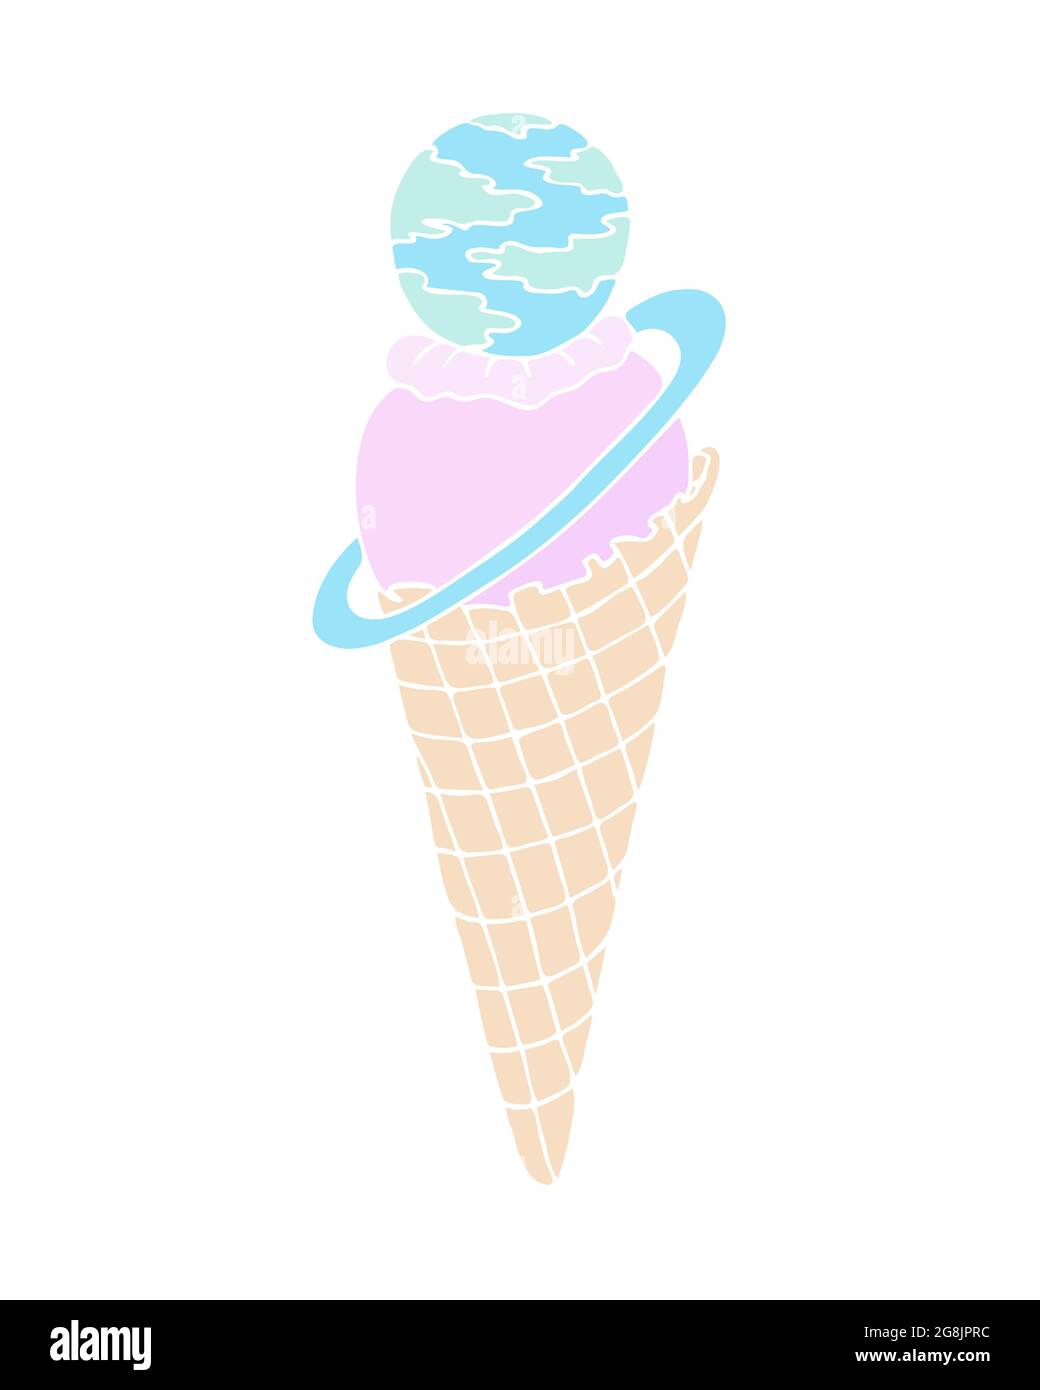 Eis, keine Kontur in einem Waffelkegel gefärbt, rosa blau gelbe Farbe, Planet Saturn, Doodle, isoliert, weißer Hintergrund. Vektorgrafik Stock Vektor